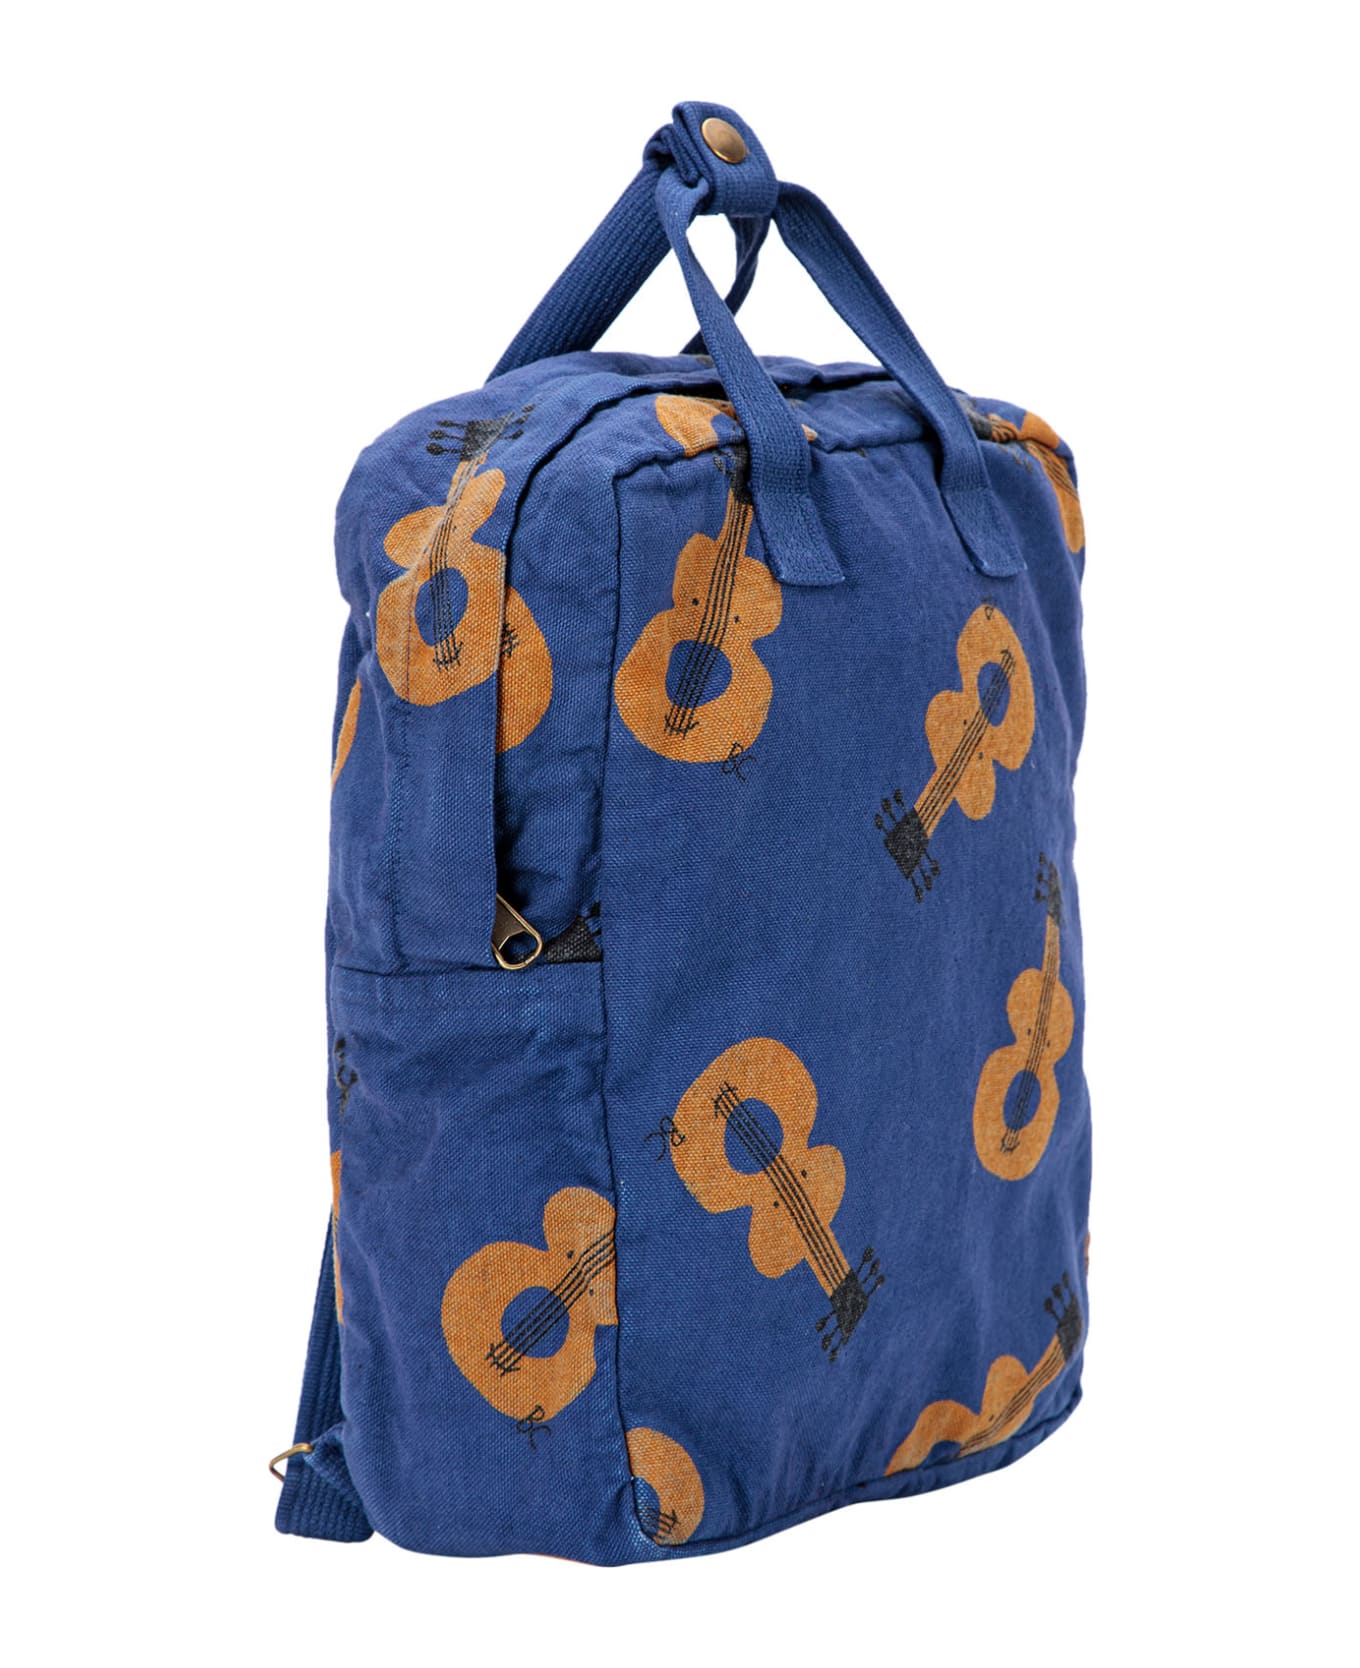 Bobo Choses Blue Backpack With Violins For Kids - Violet アクセサリー＆ギフト